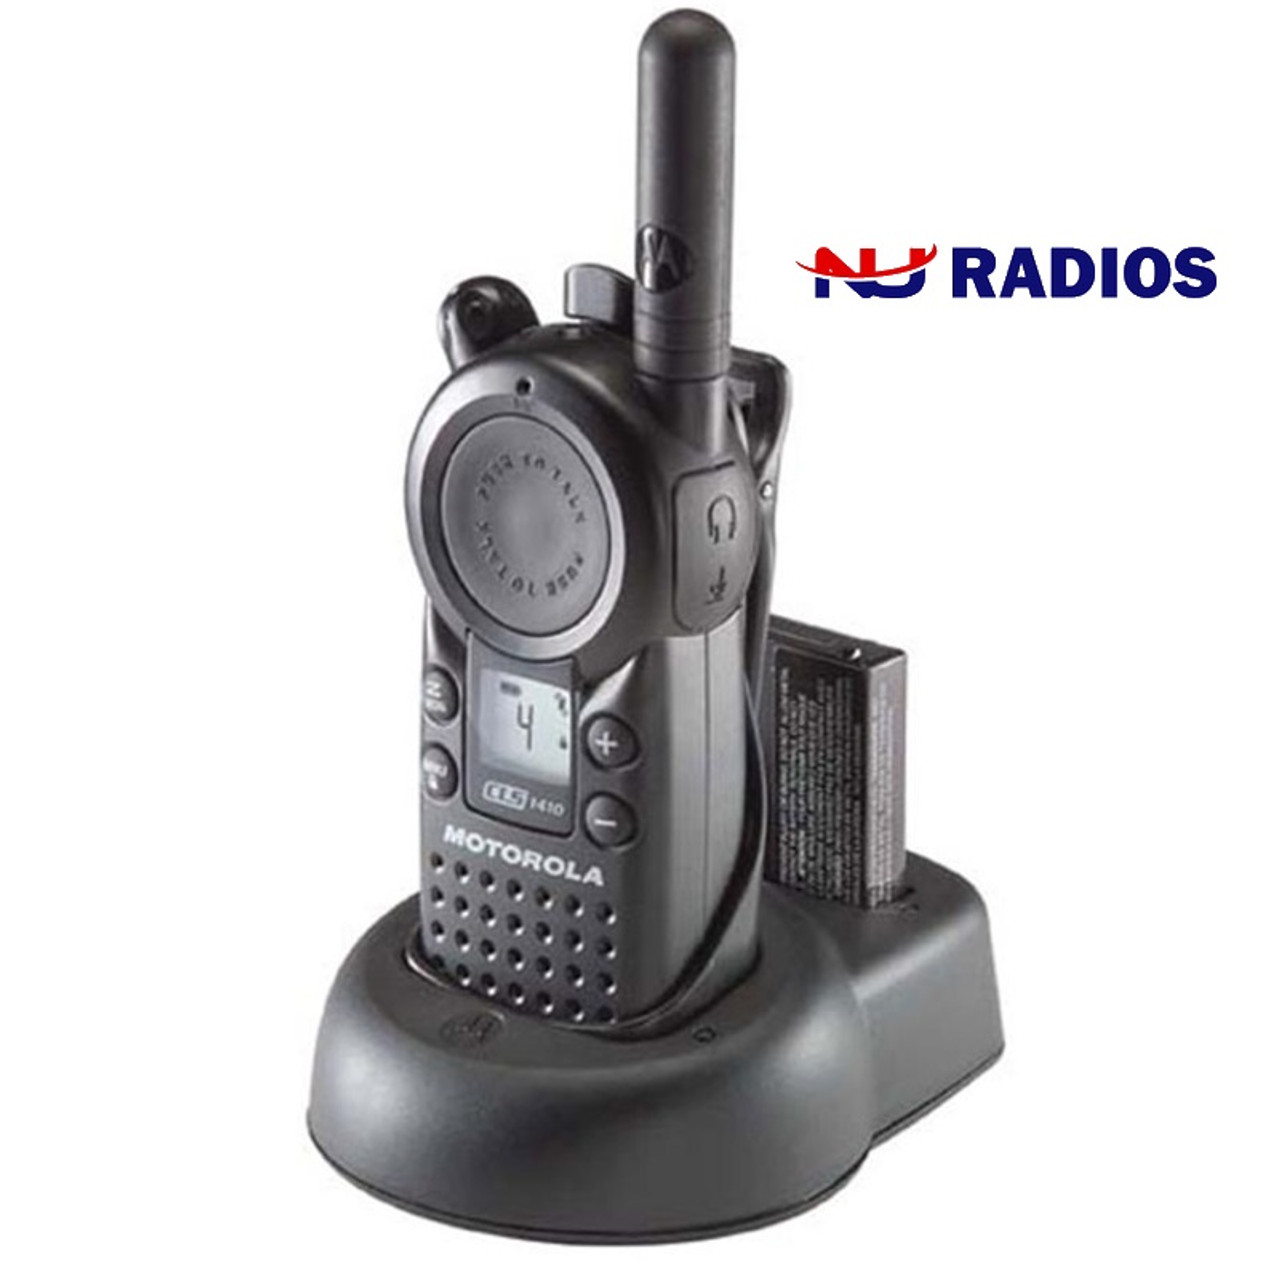 Pack of Motorola CLS1410 Two Way Radio Walkie Talkies - 1